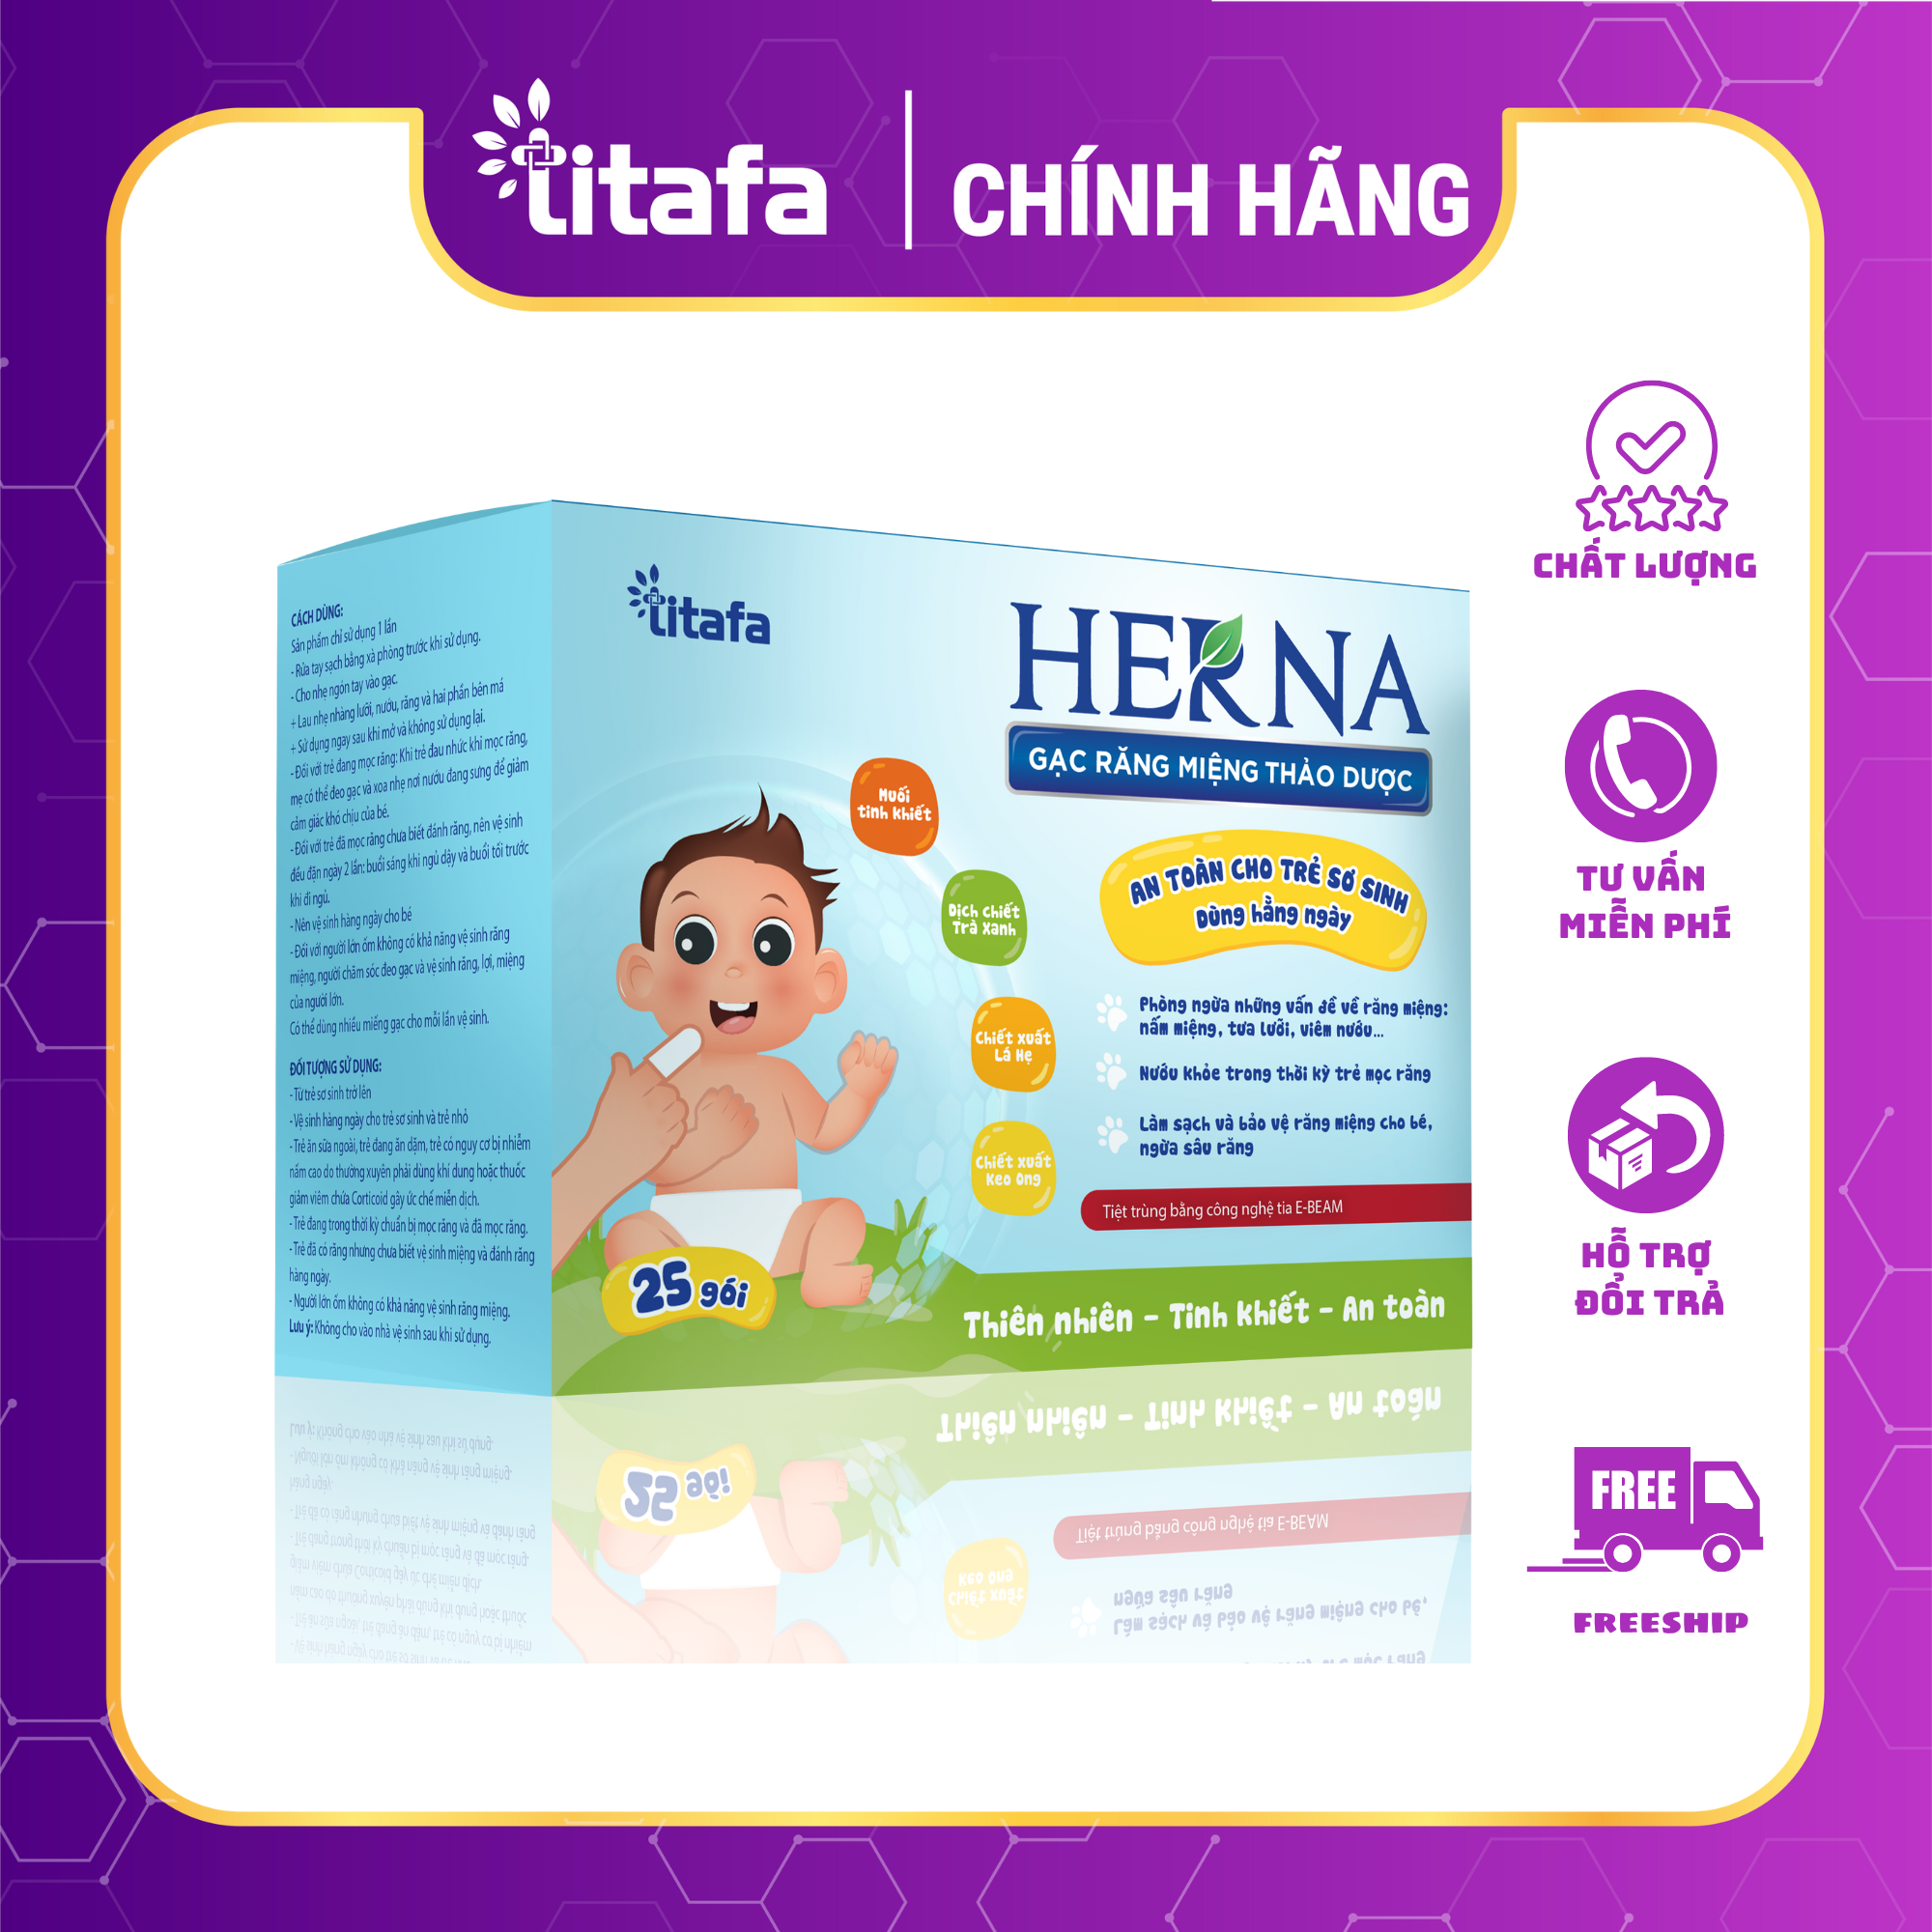 Gạc răng miệng thảo dược Herna (25 gói) - An toàn cho trẻ sơ sinh dùng hằng ngày phòng ngừa vấn đề răng miệng cho bé